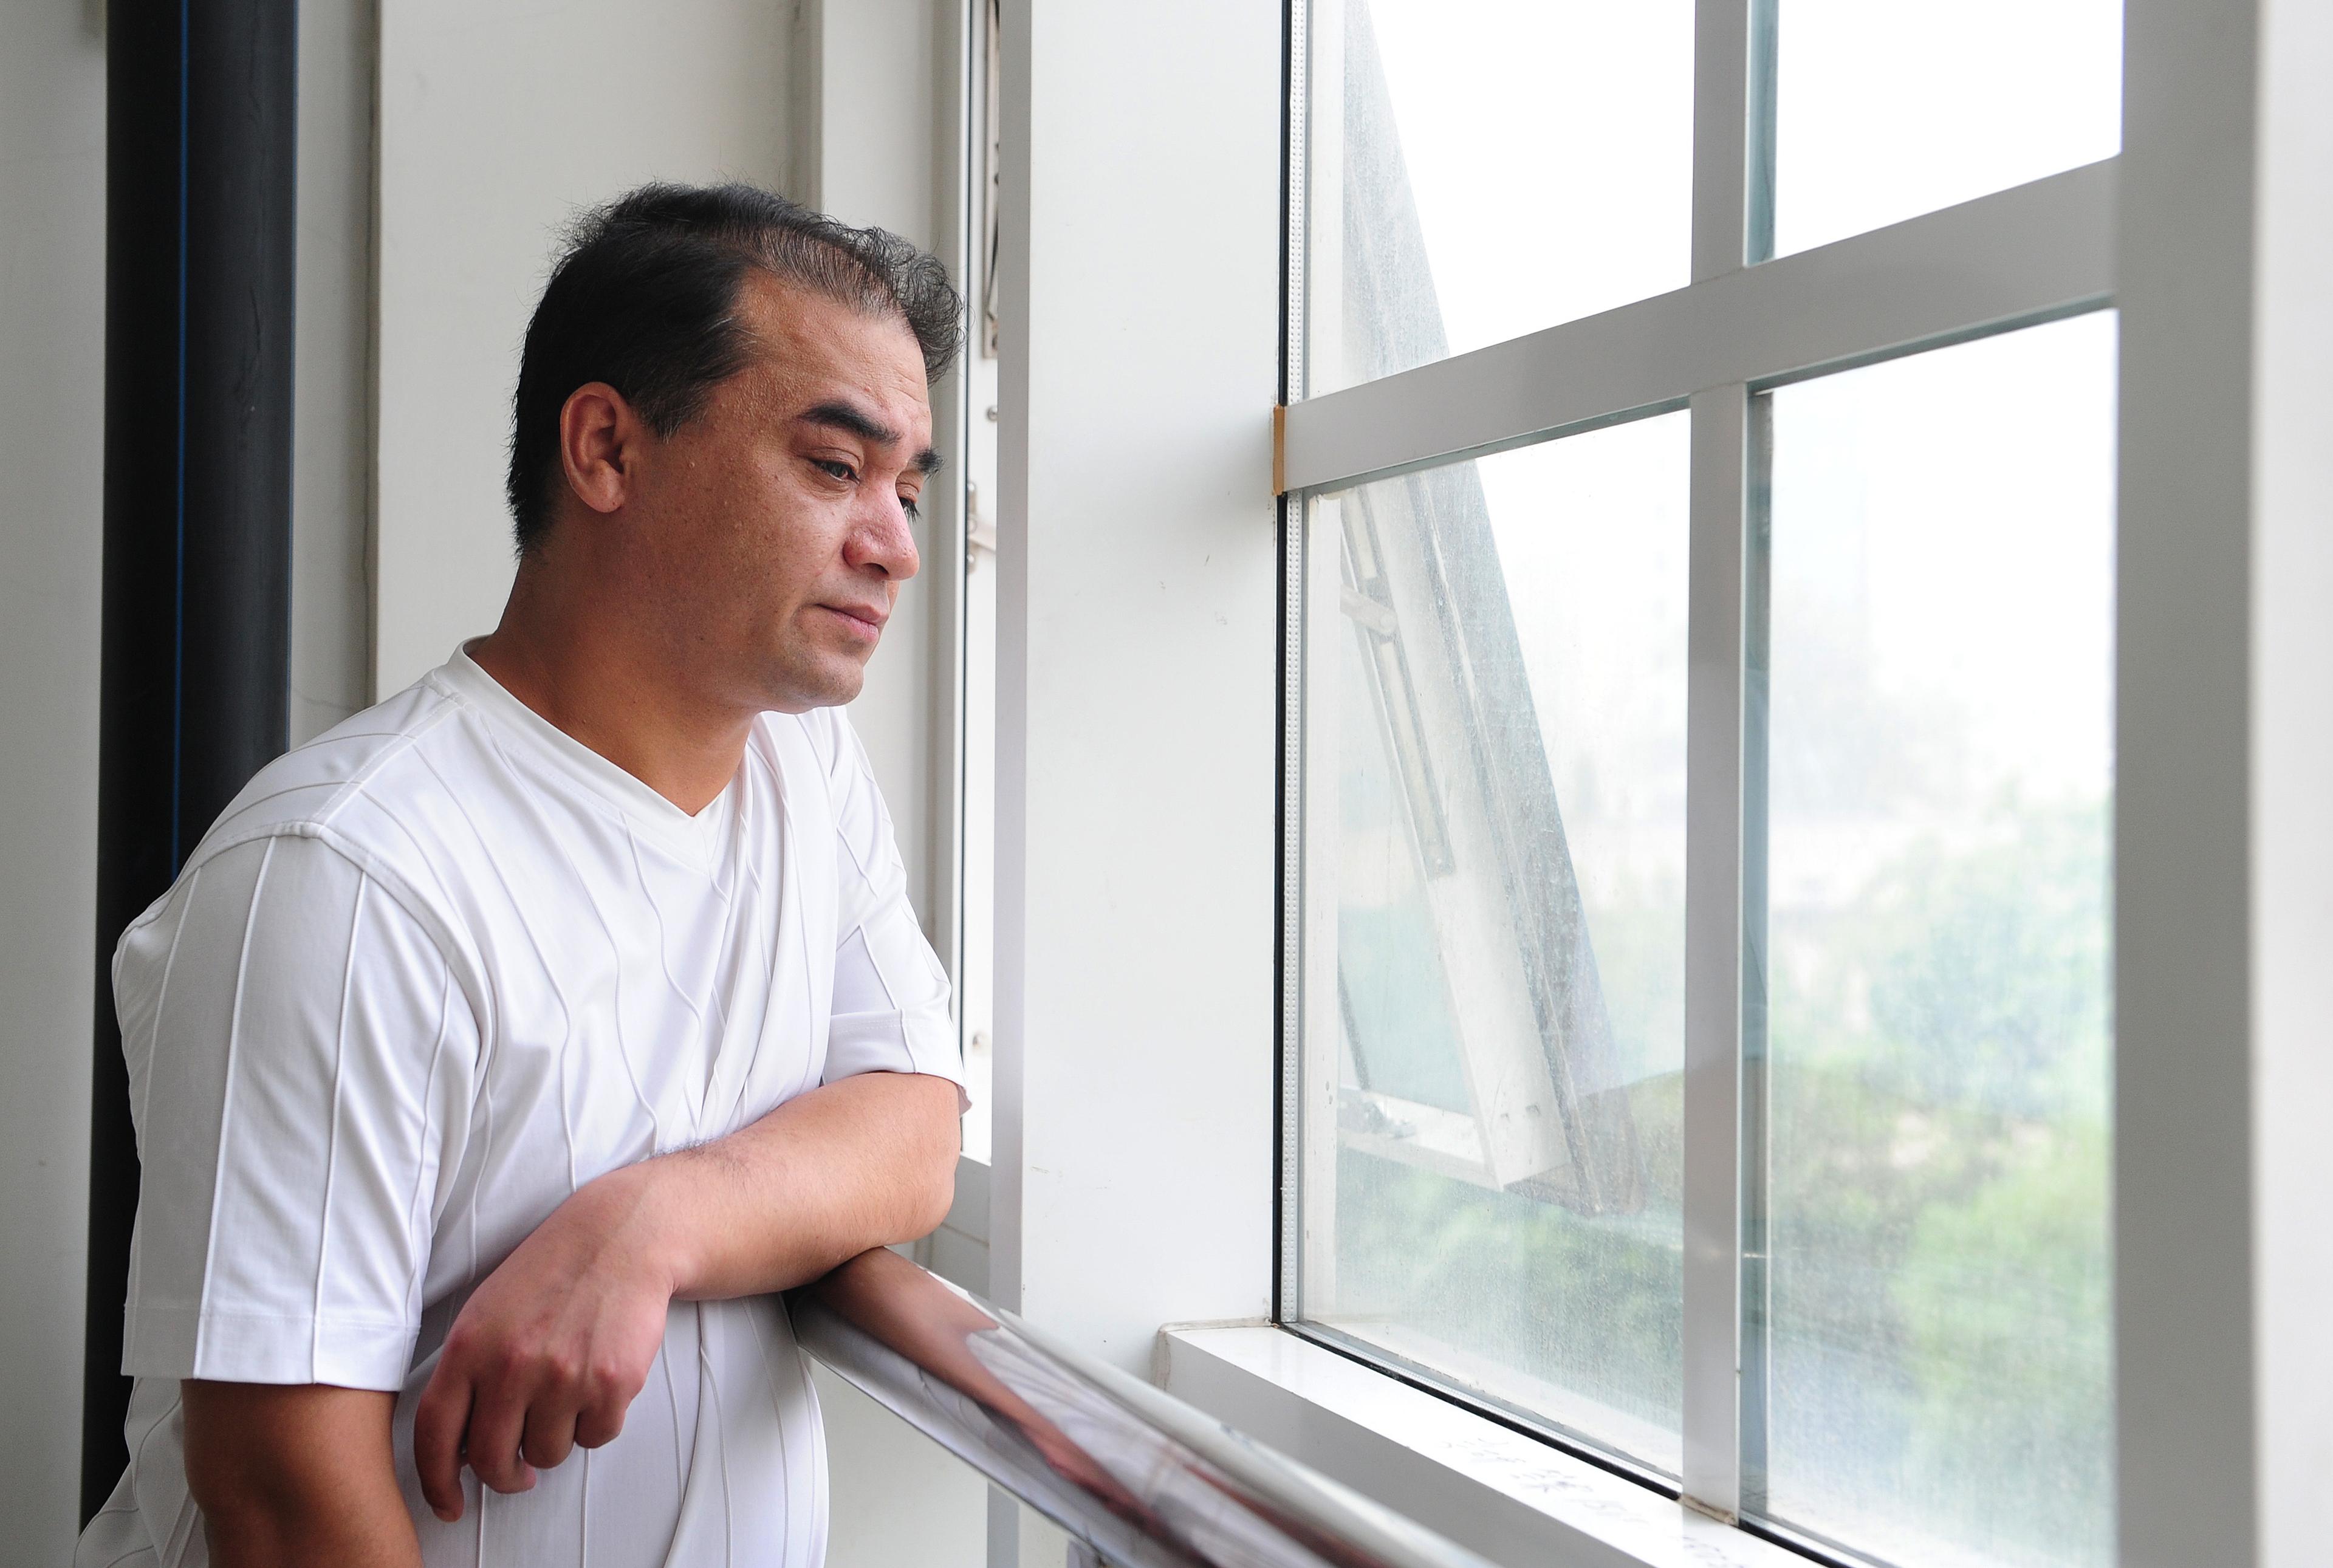 Ilham Tohti,  en framstående uigurisk intellektuell, som sitter fängslad på livstid i Kina, har vunnit det prestigefyllda Martin Ennals-priset för sin kamp för mänskliga rättigheter. (Foto: Frederic J. Brown/AFP/Getty Images)